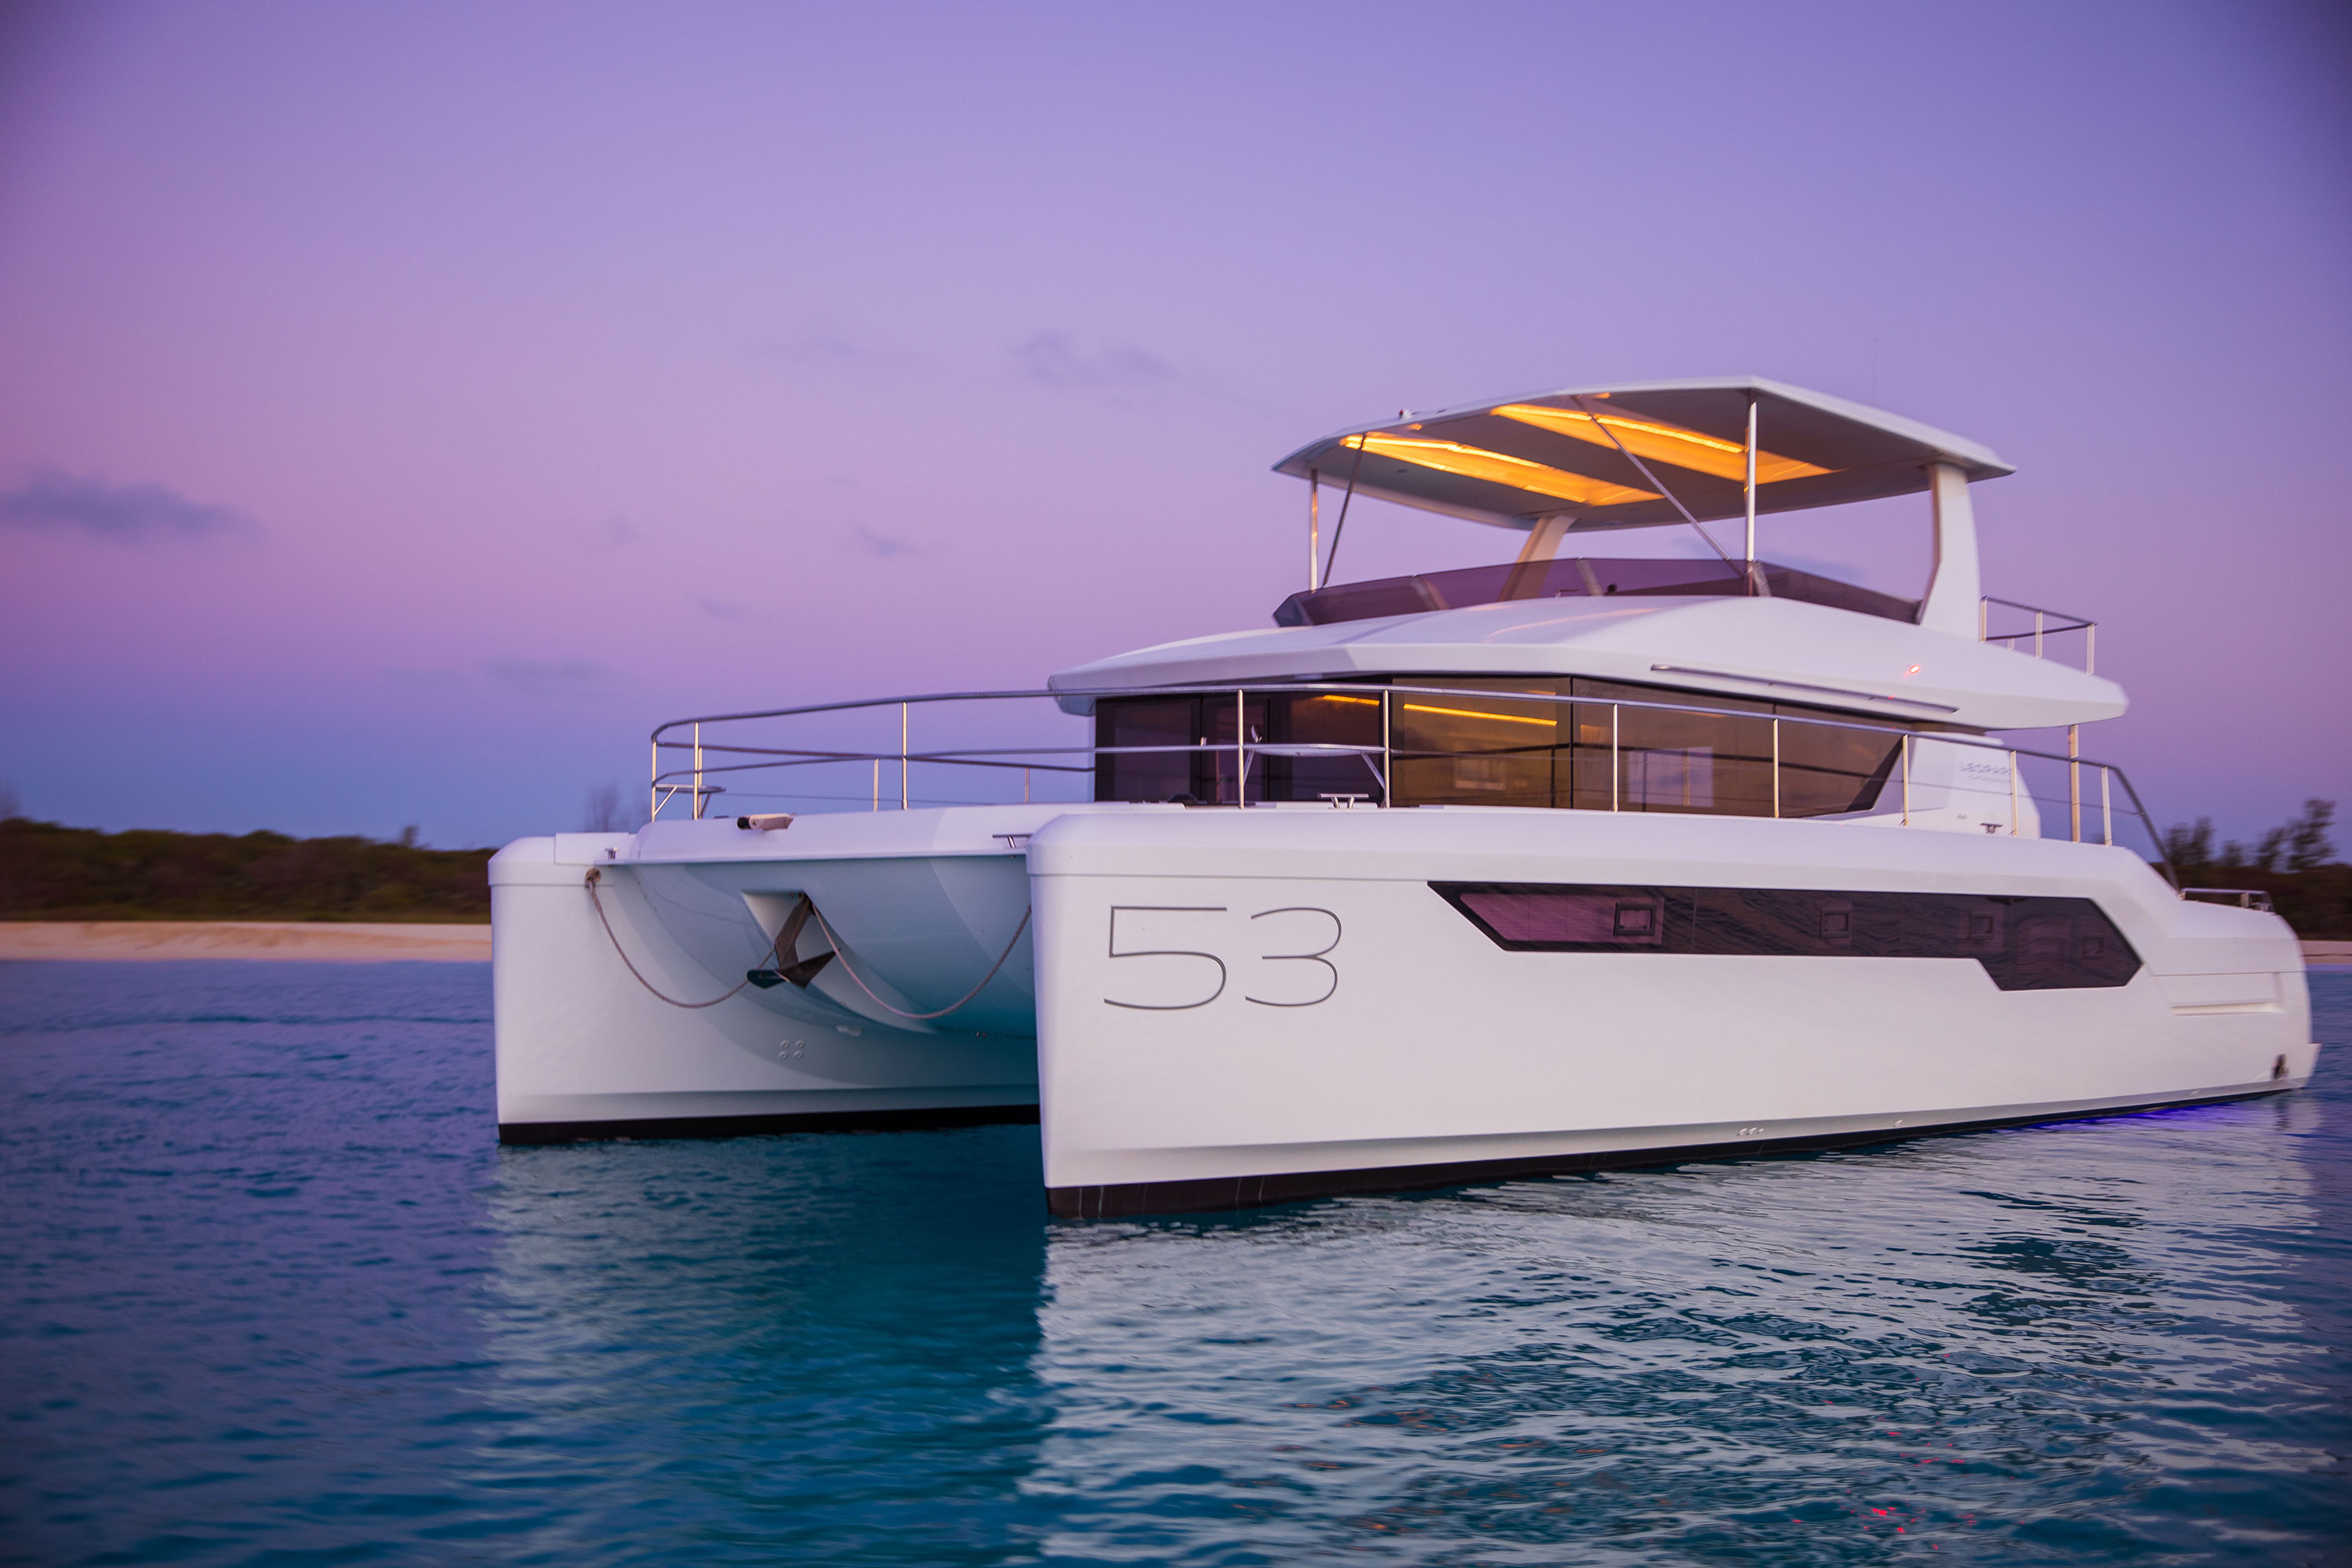 53 ft catamaran for sale